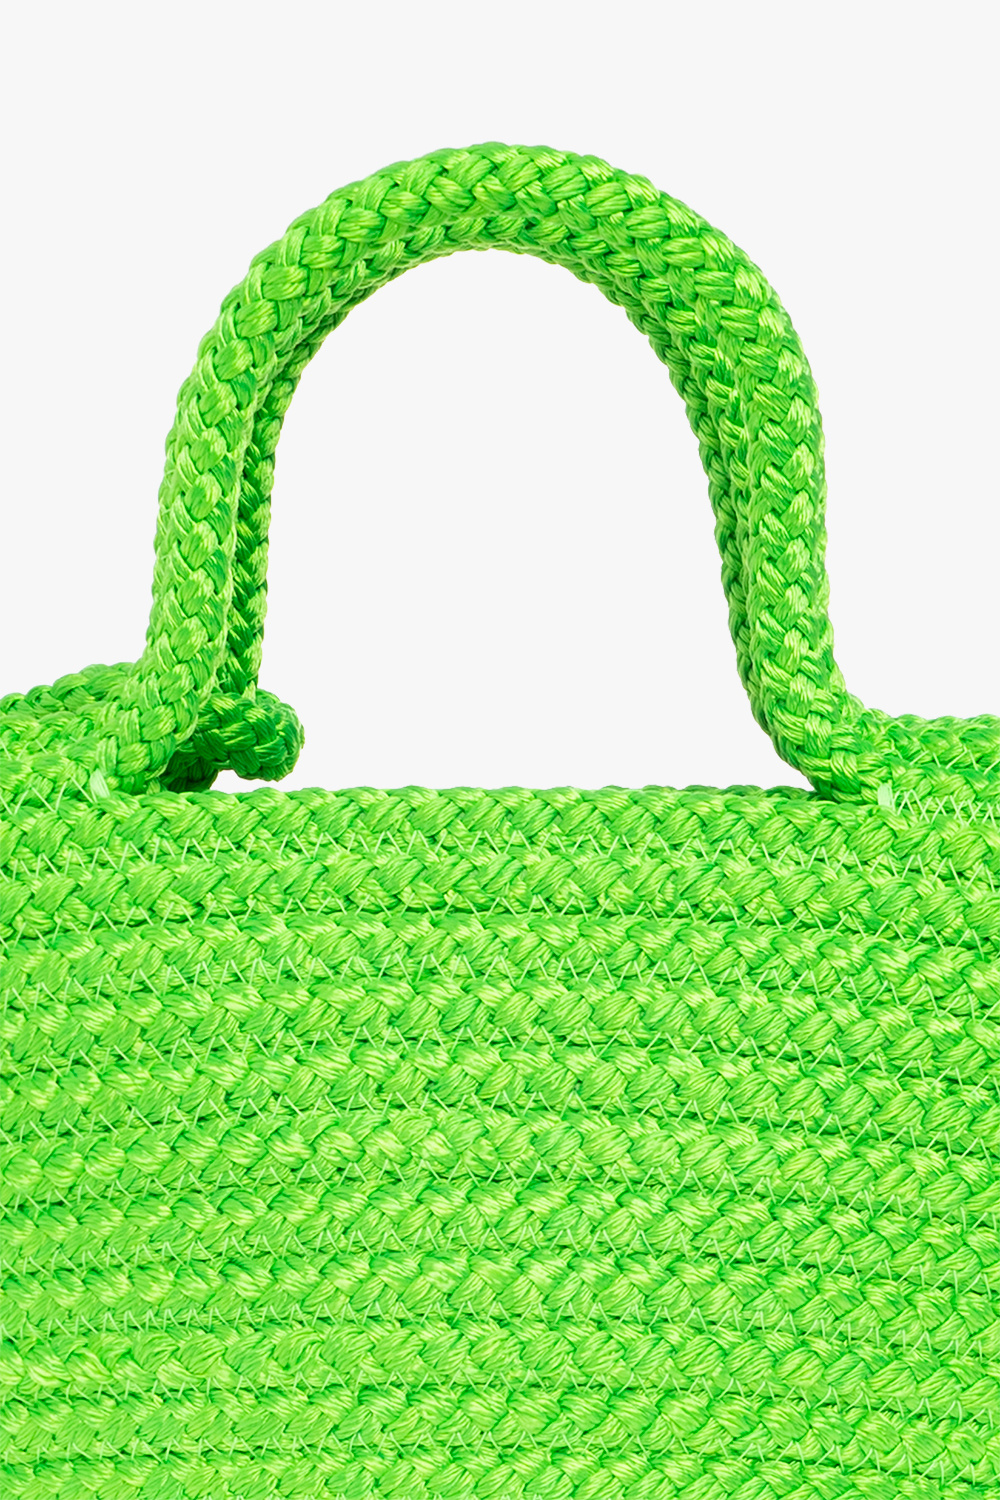 Green 'College Large' shoulder bag Saint Laurent - Vitkac GB